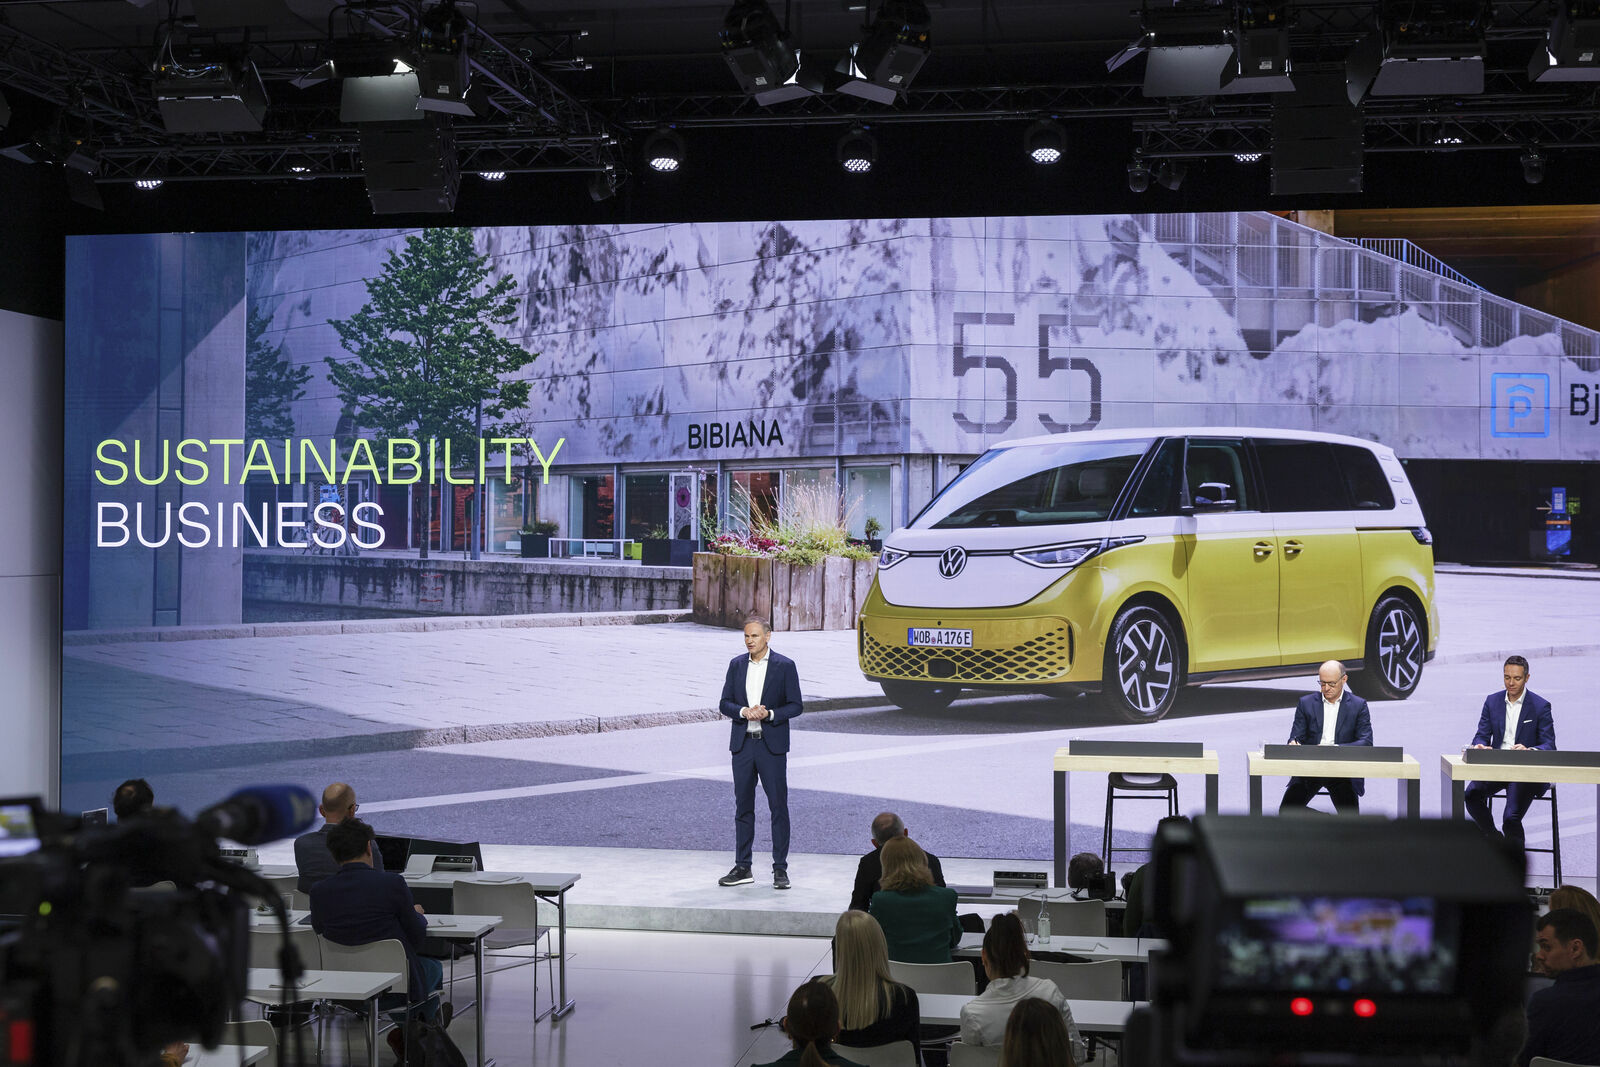 Ein Mann präsentiert auf einer Bühne das Thema Nachhaltigkeit im Geschäftsbereich mit einem Bild eines gelben, elektrischen VW-Busses.